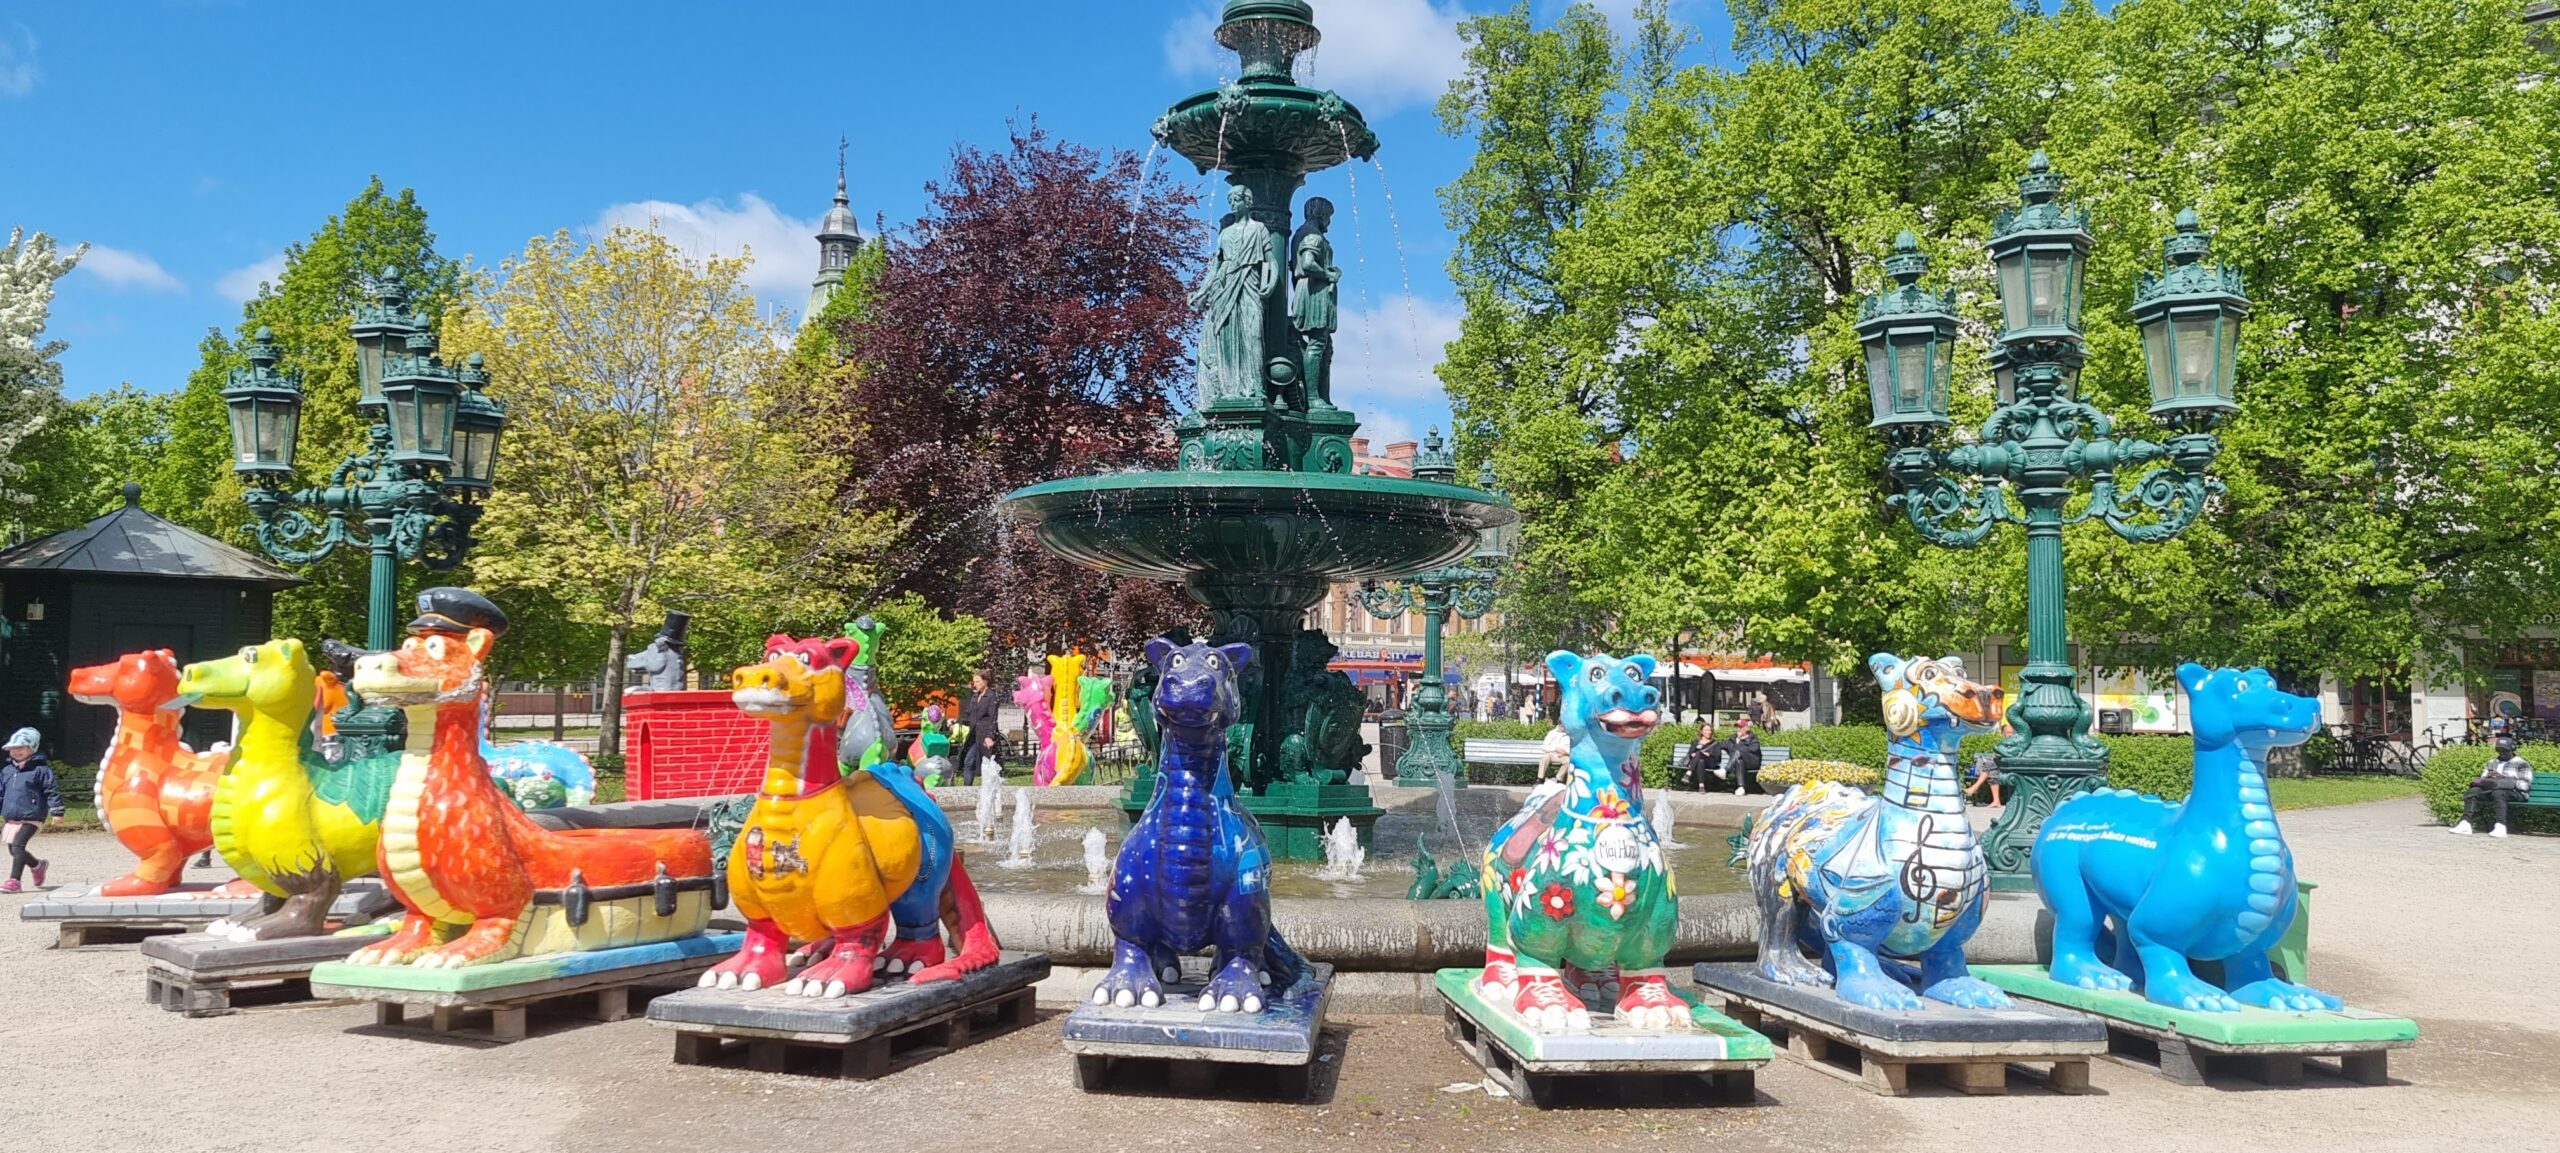 Alla färgglada drakar uppställda runt fontänen i Vängåvan